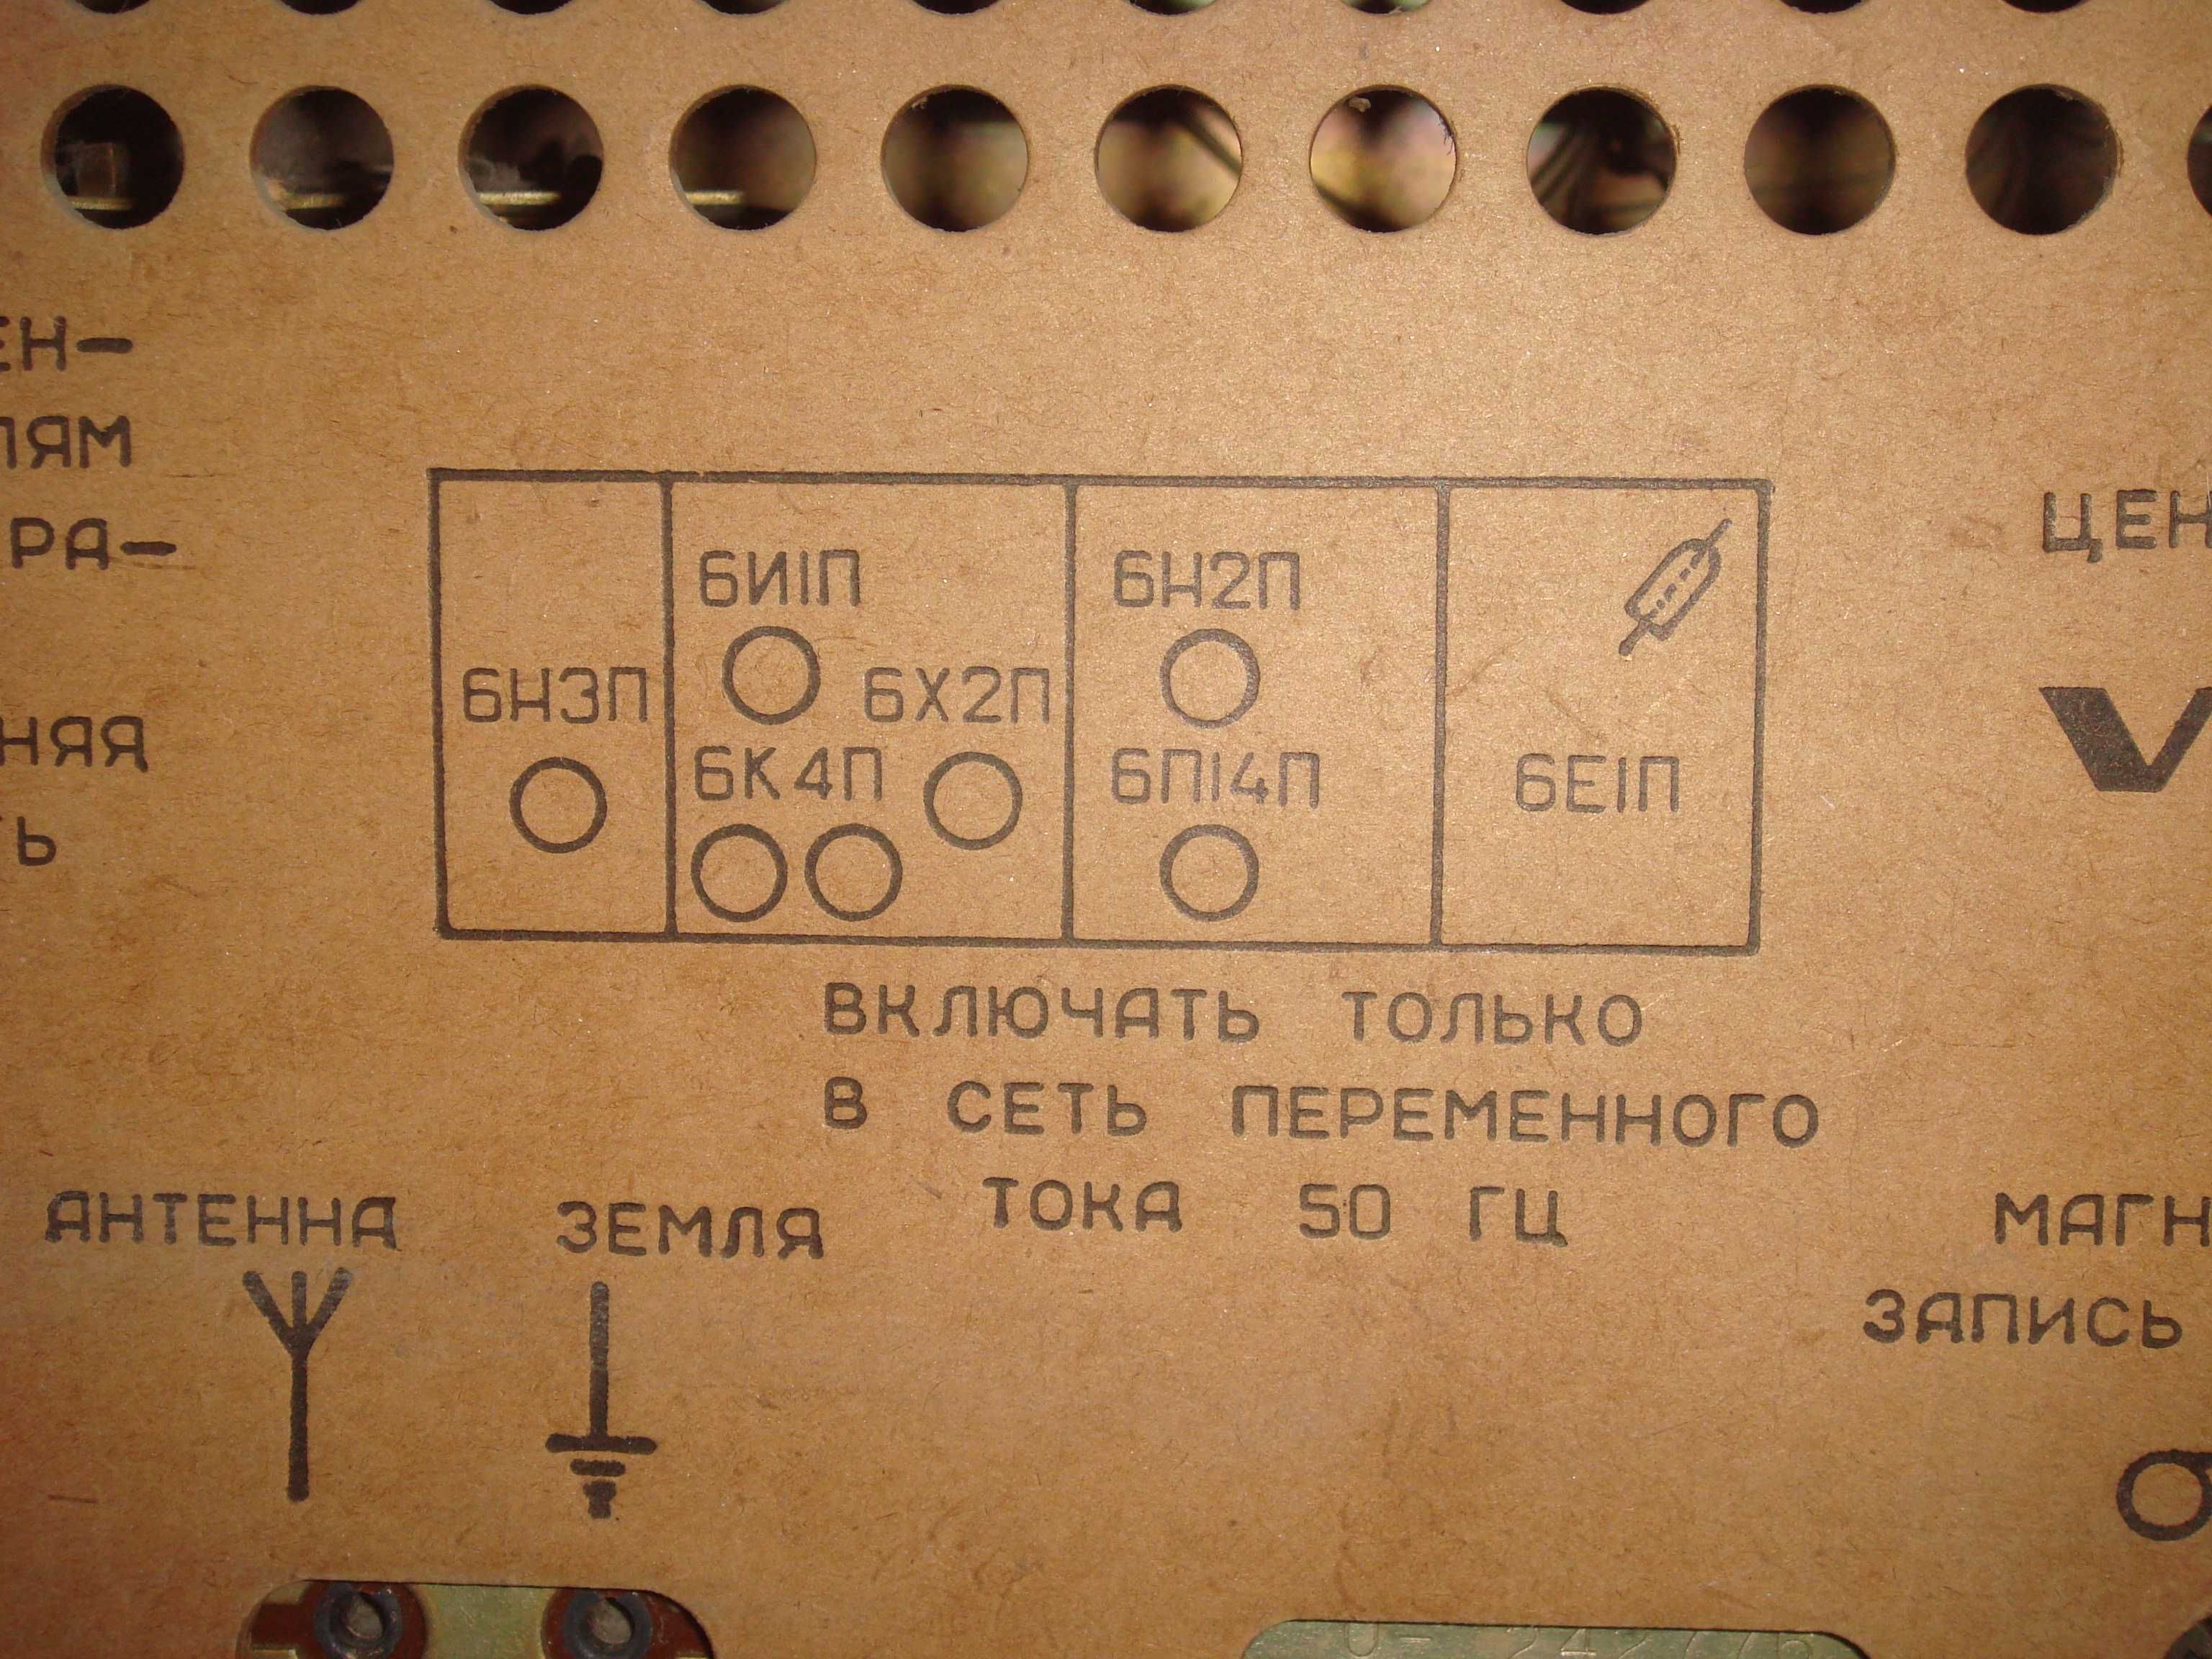 Радиола сетевая ламповая "ВЭФ-Рапсодия" 1965 г.